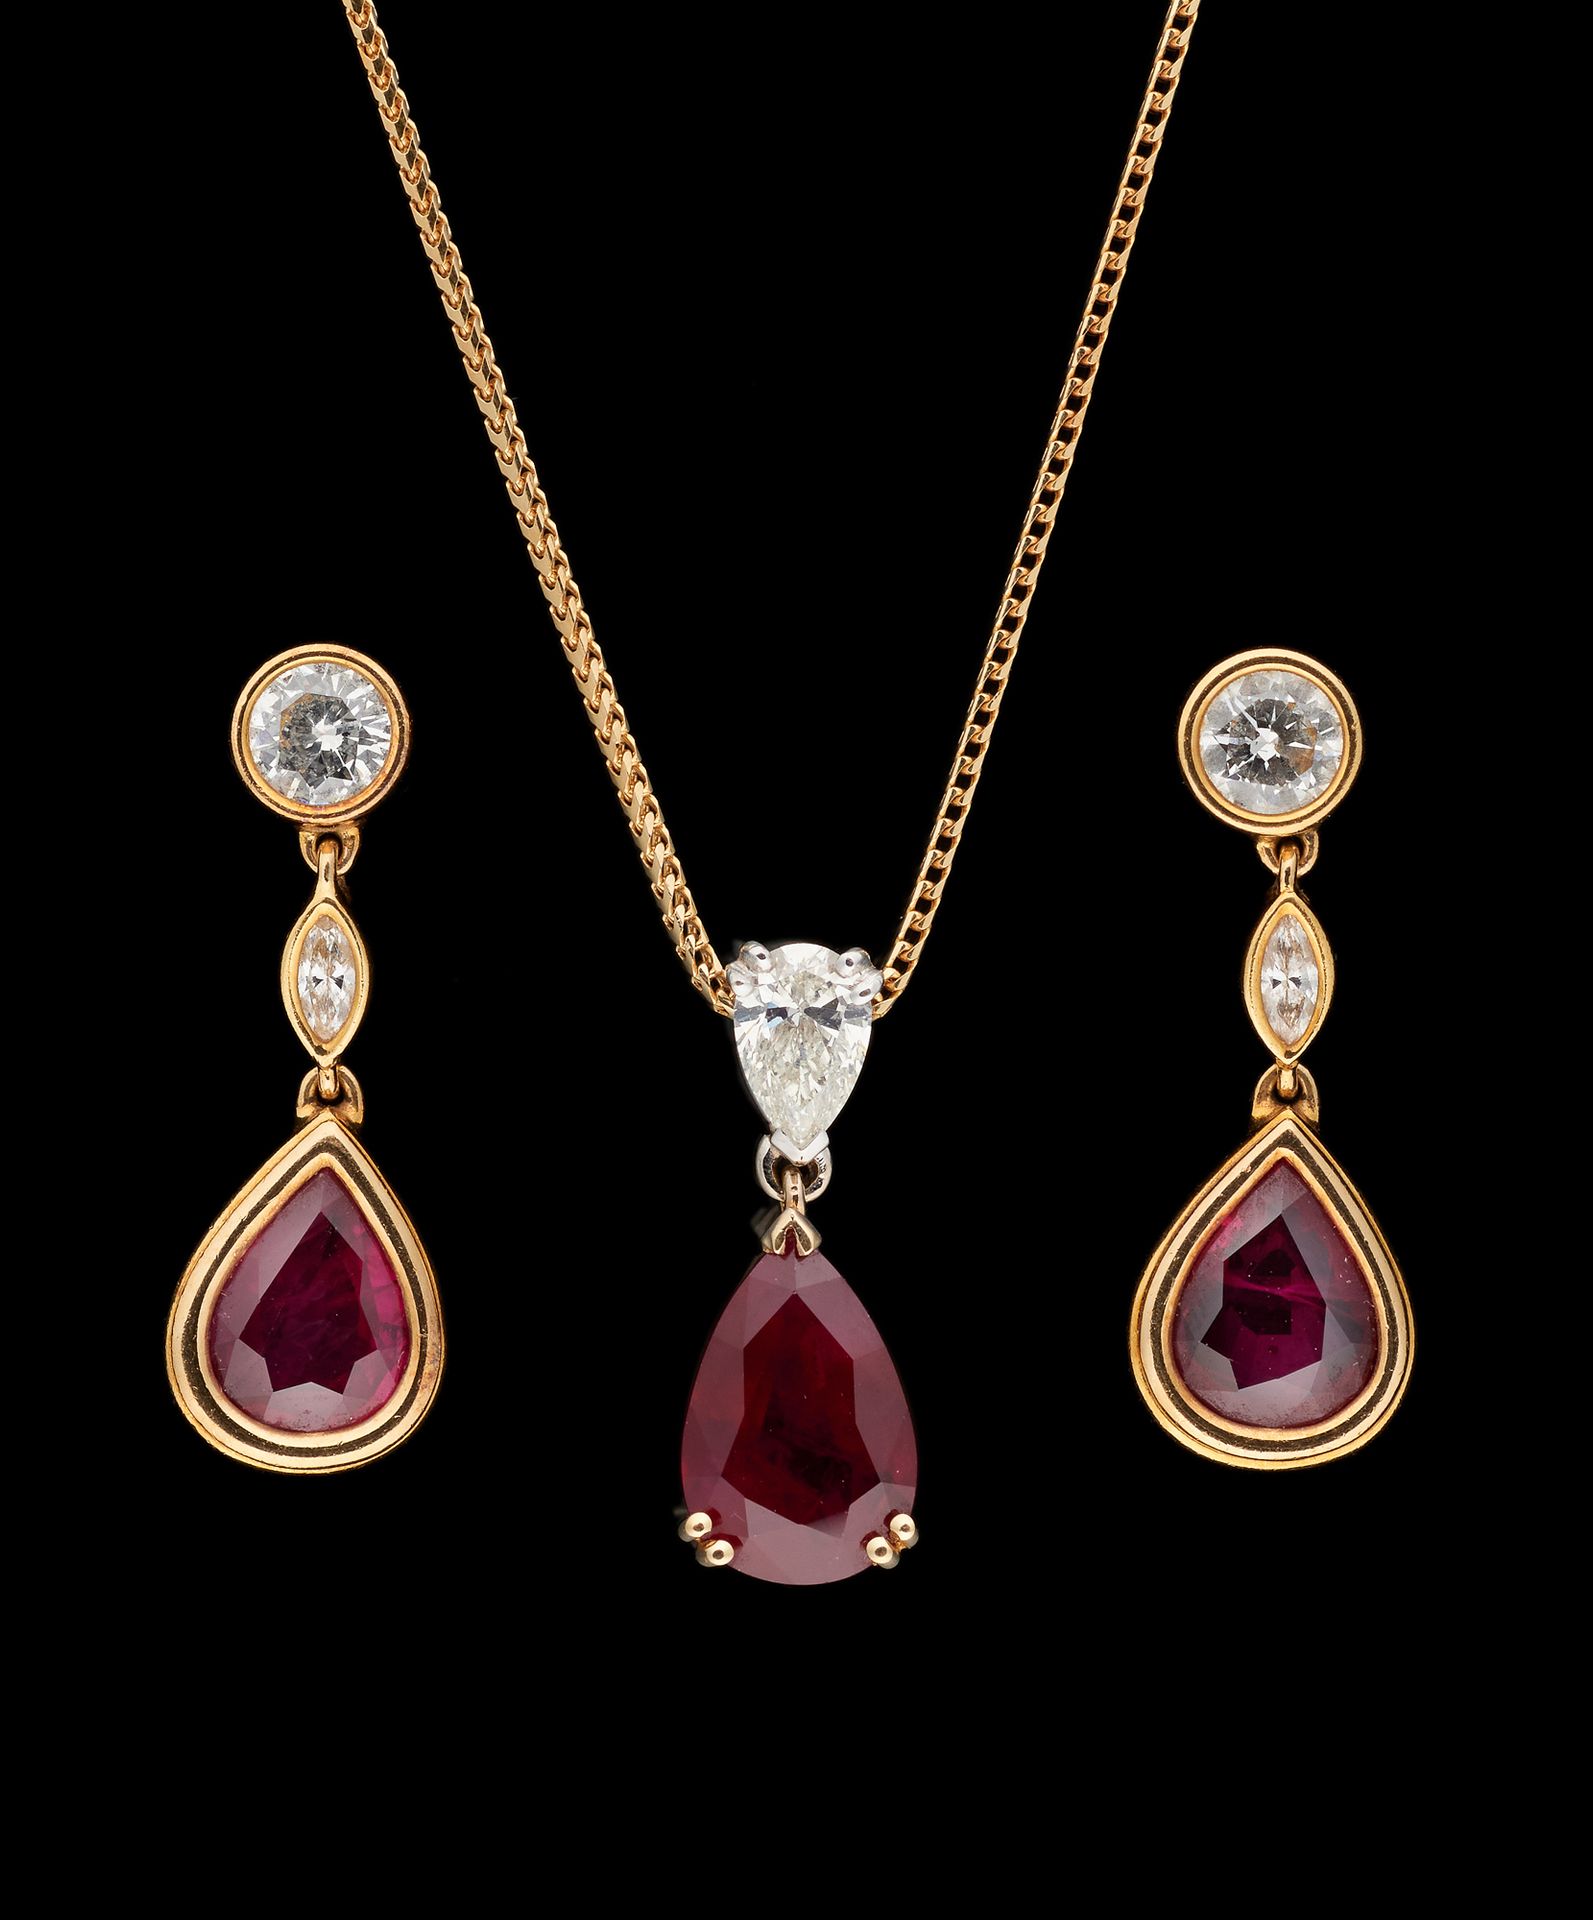 Joaillerie. 珠宝：拍品包括一对耳环和一条吊坠项链，镶有梨形切割的非洲红宝石，重达+/-7克拉，钻石重达+/-1.80克拉。